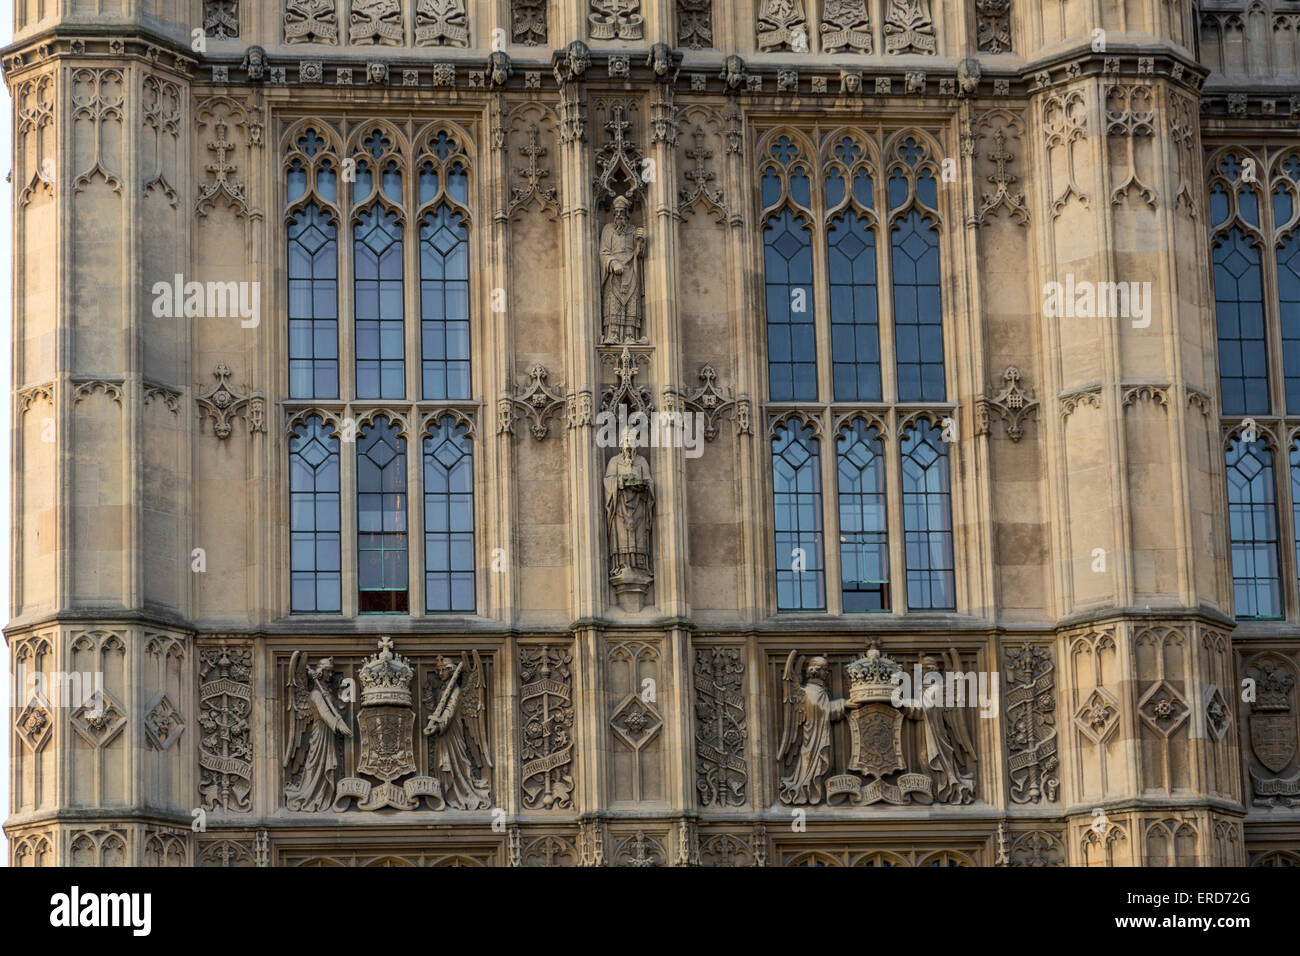 Großbritannien, England, London. Westminster Palace, Houses of Parliament, Steinmetzarbeiten von Figuren und Heraldik. Stockfoto